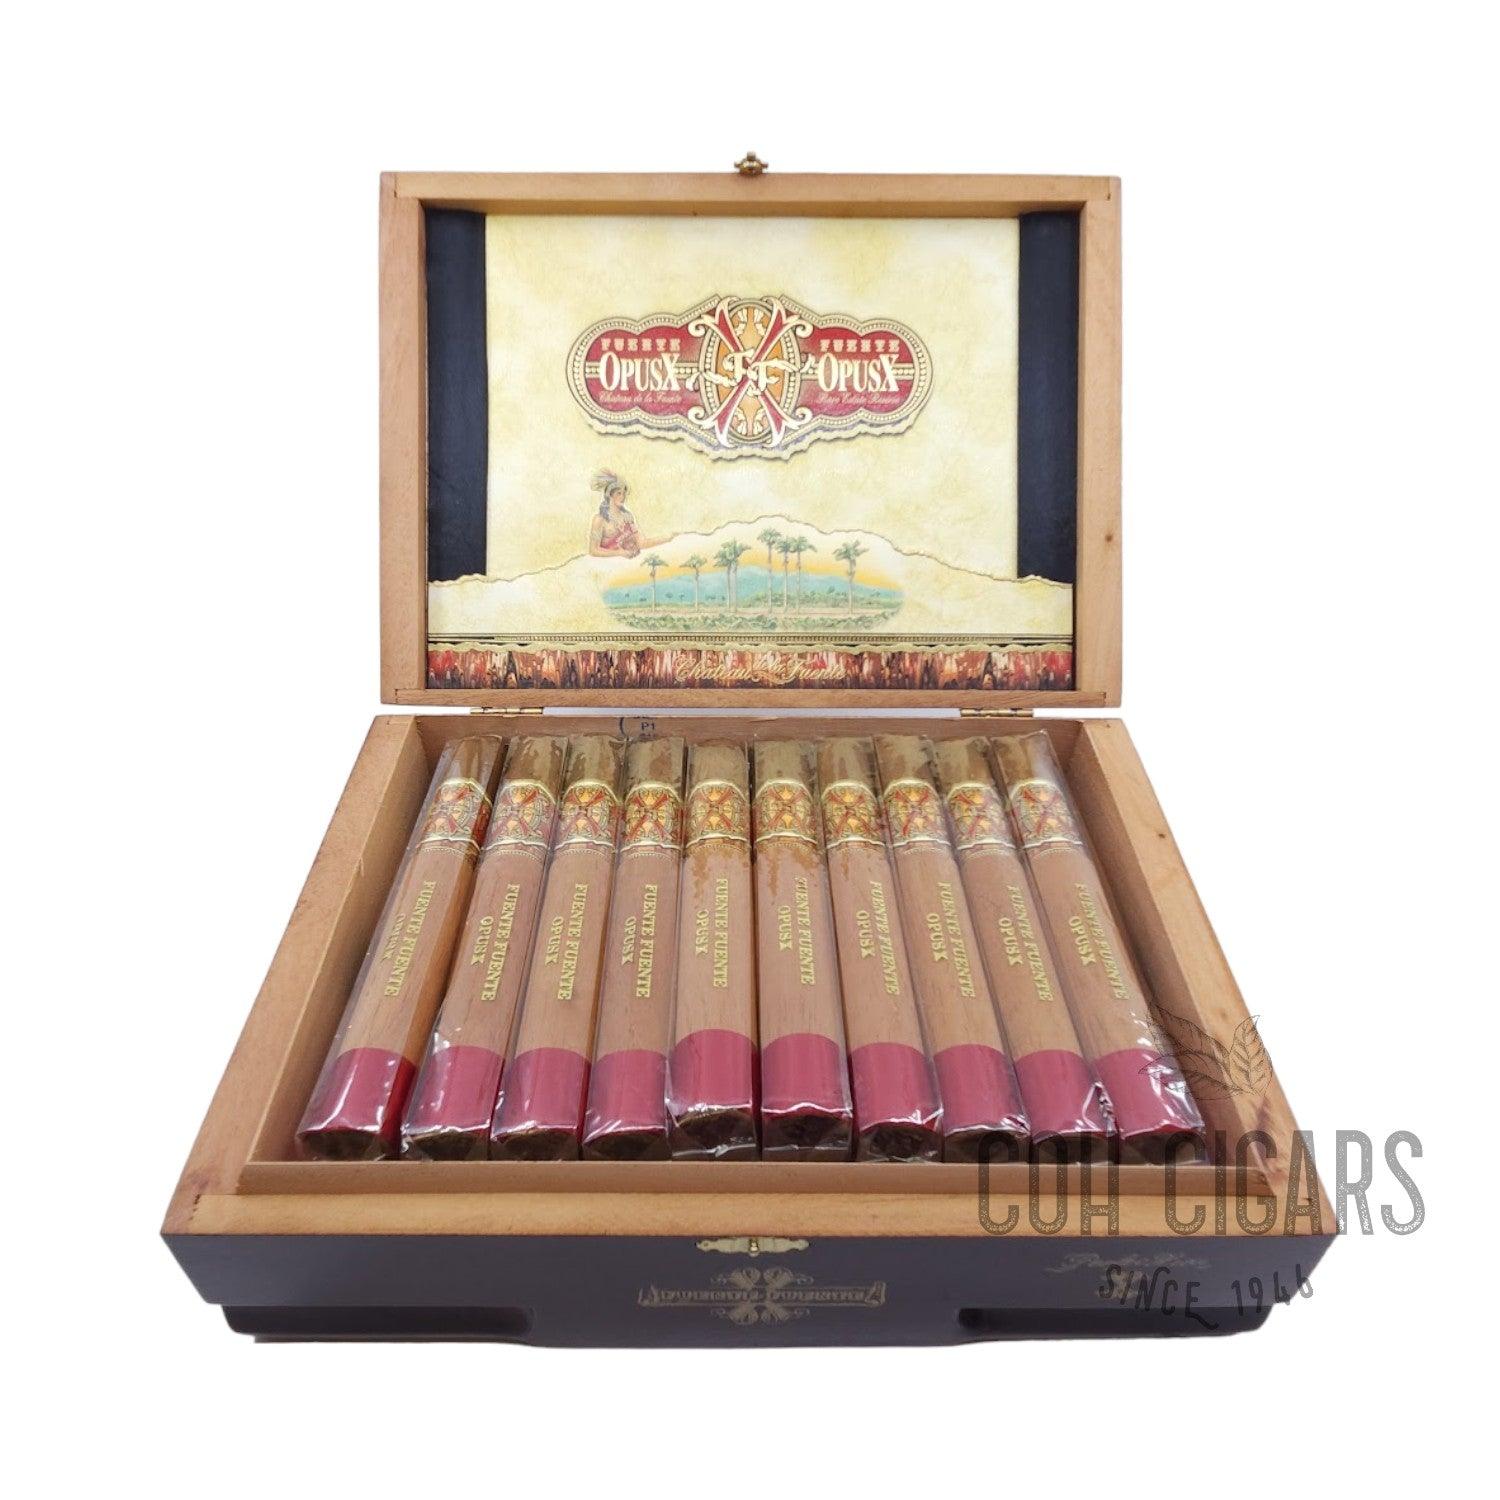 Arturo Fuente Cigar | Fuente Fuente Opusx Perfecxion X | Box 32 - hk.cohcigars